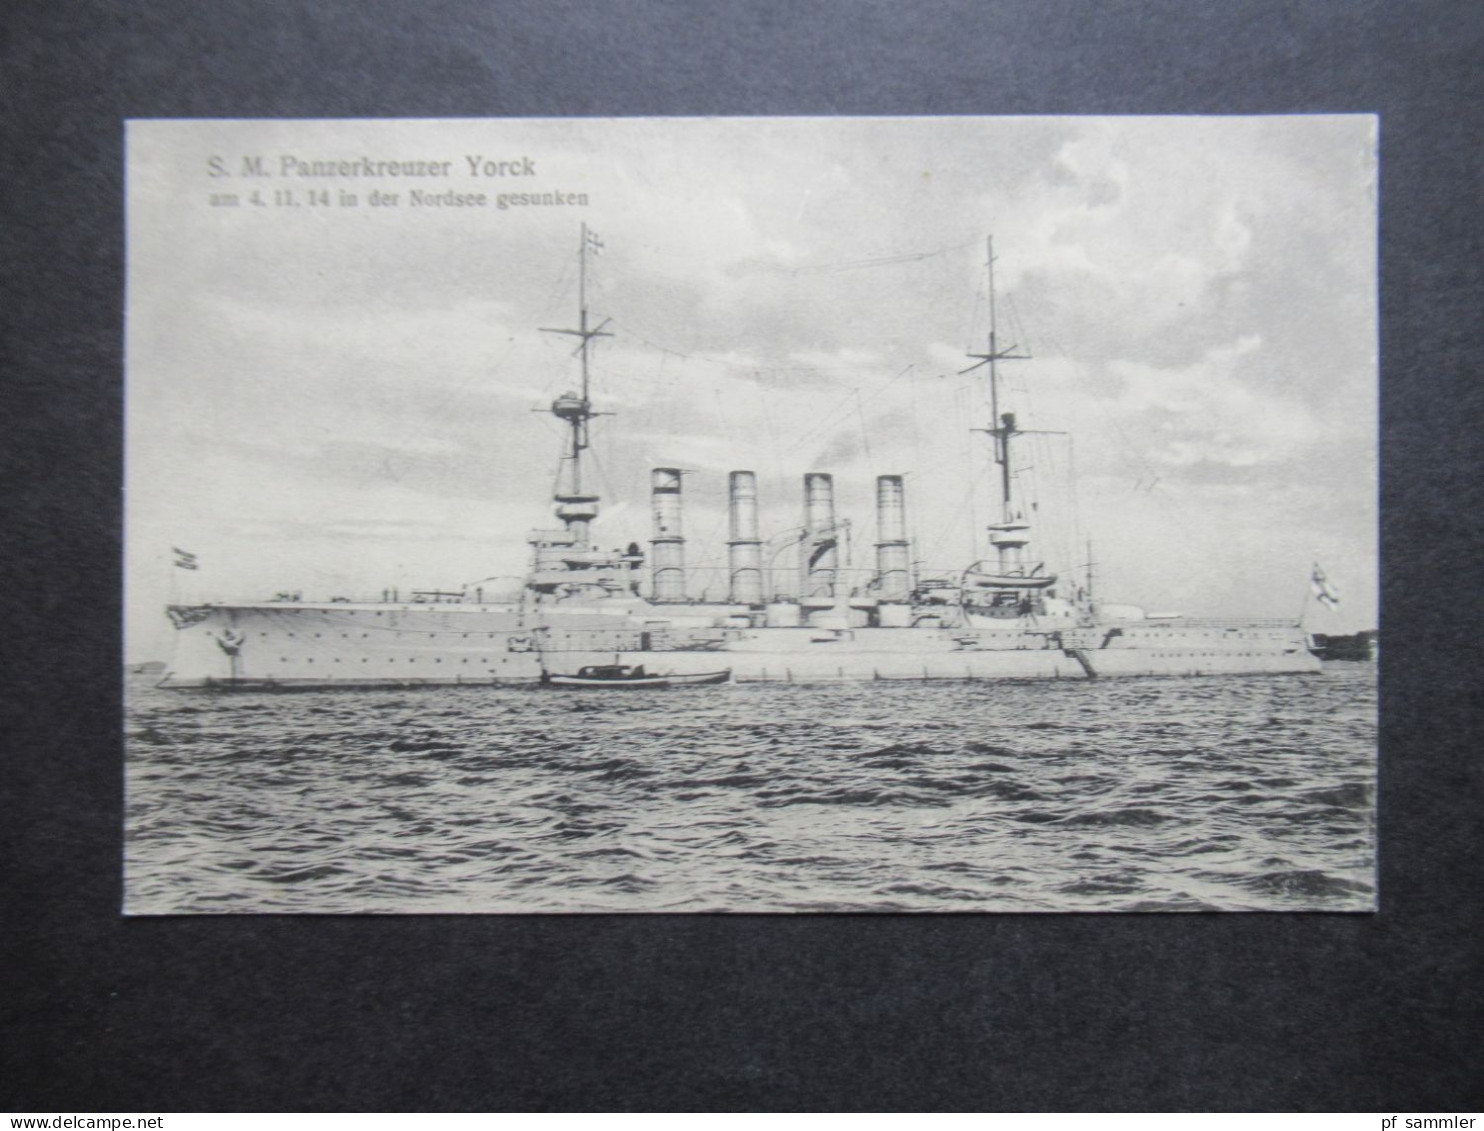 DR AK Kriegsschiff S.M. Panzerkreuzer Yorck Am 4.11.1914 In Der Nordsee Gesunken Verlag Gebr. Lempe Kiel No.26 - Oorlog